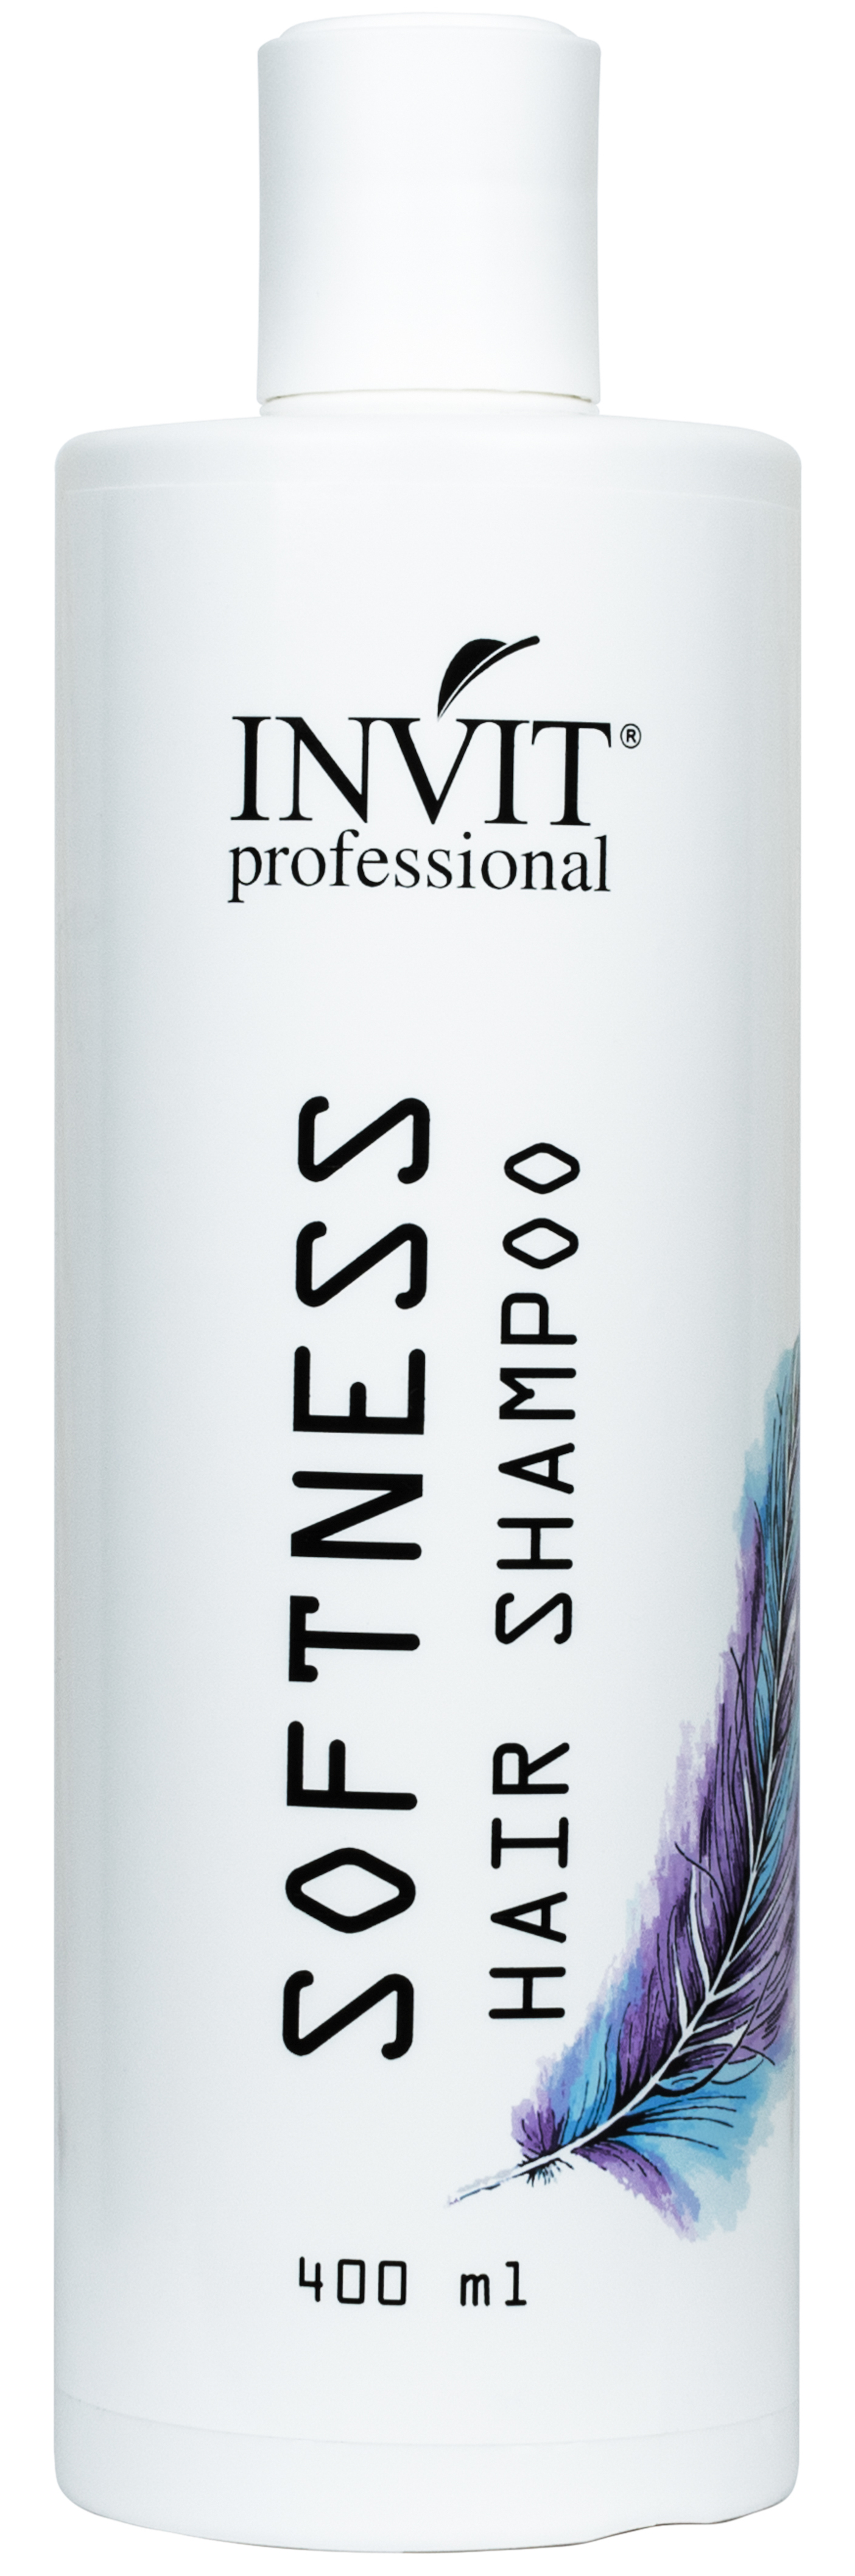 Купить Шампунь Invit успокаивающий Softness для чувствительной кожи головы и волос 400 мл, Invit Professional